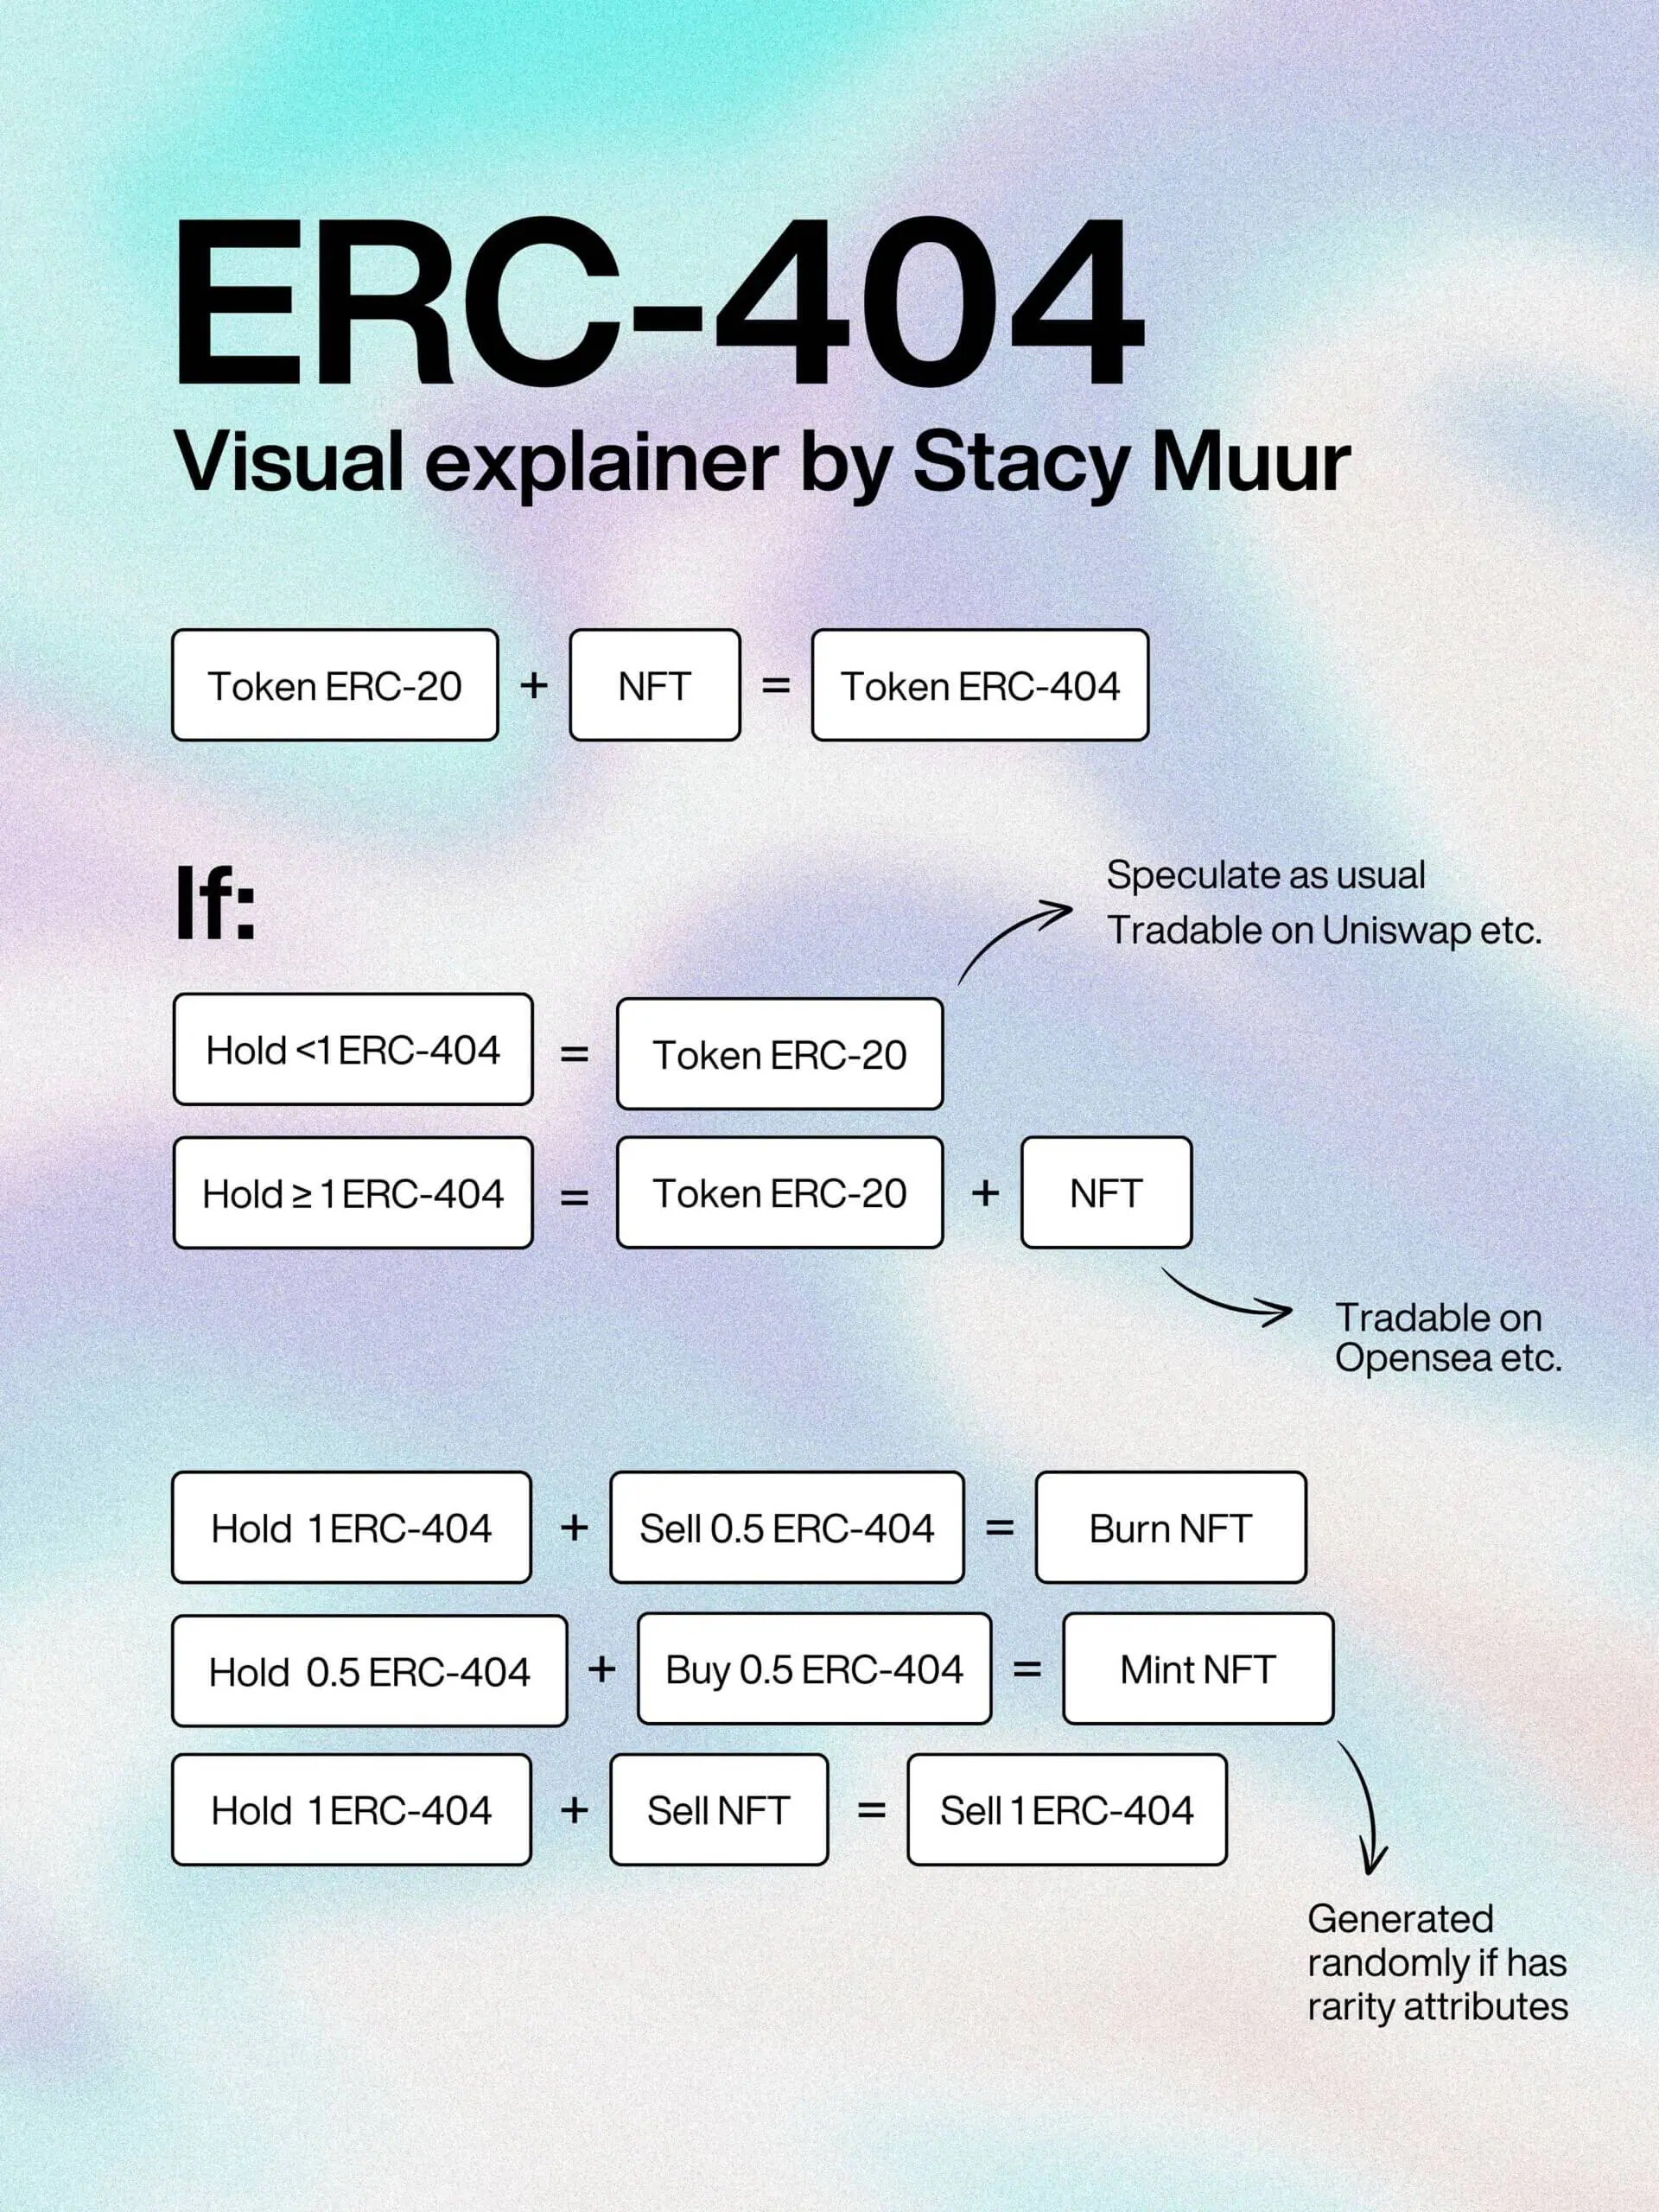 Cơ chế hoạt động của ERC-404. Nguồn: Starcy Muur trên Twitter